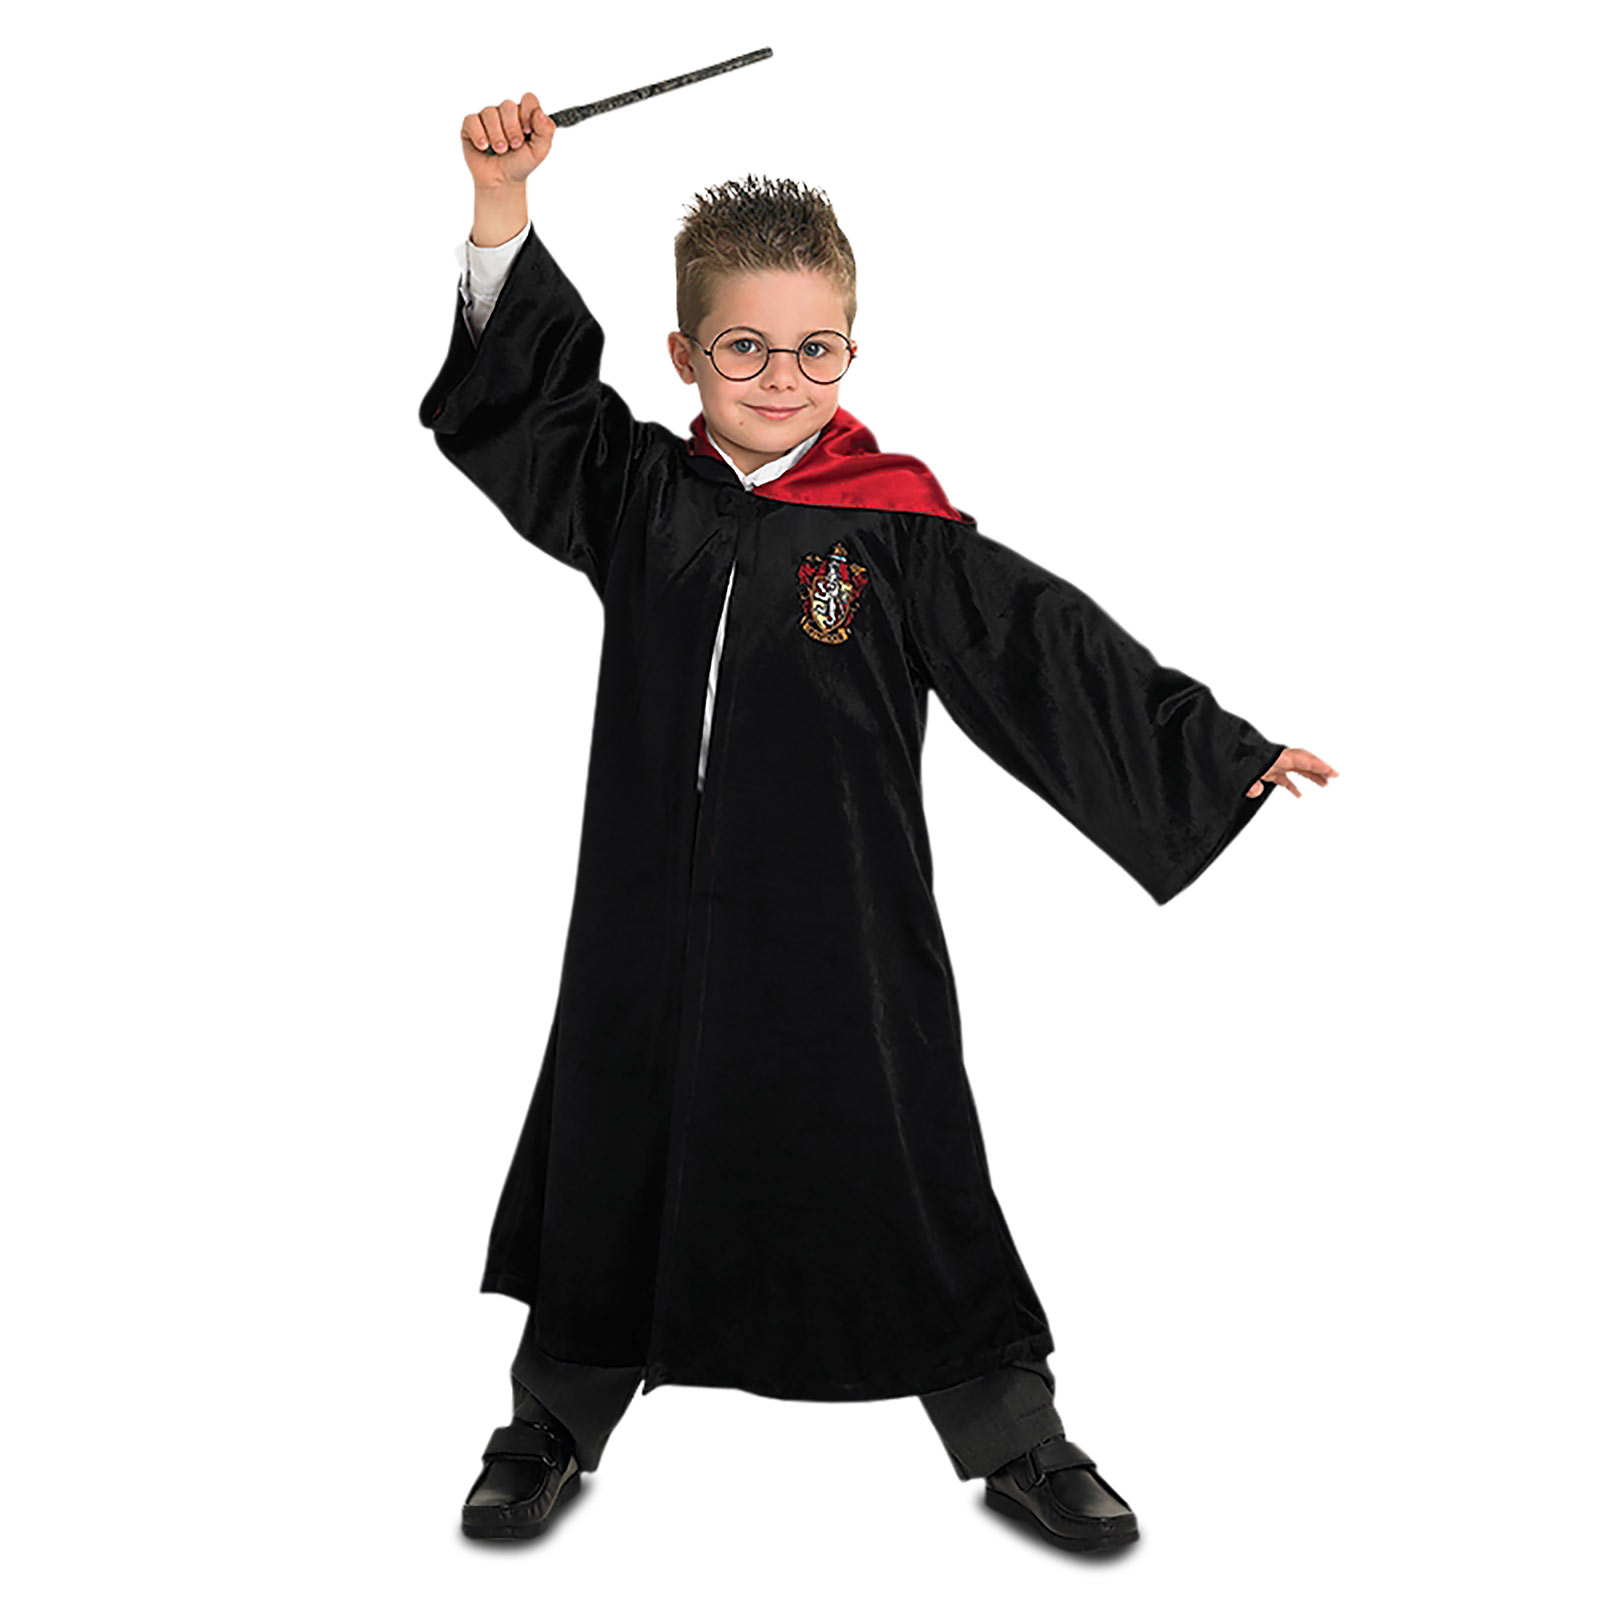 Harry Potter - Gryffindor Robe für Kinder